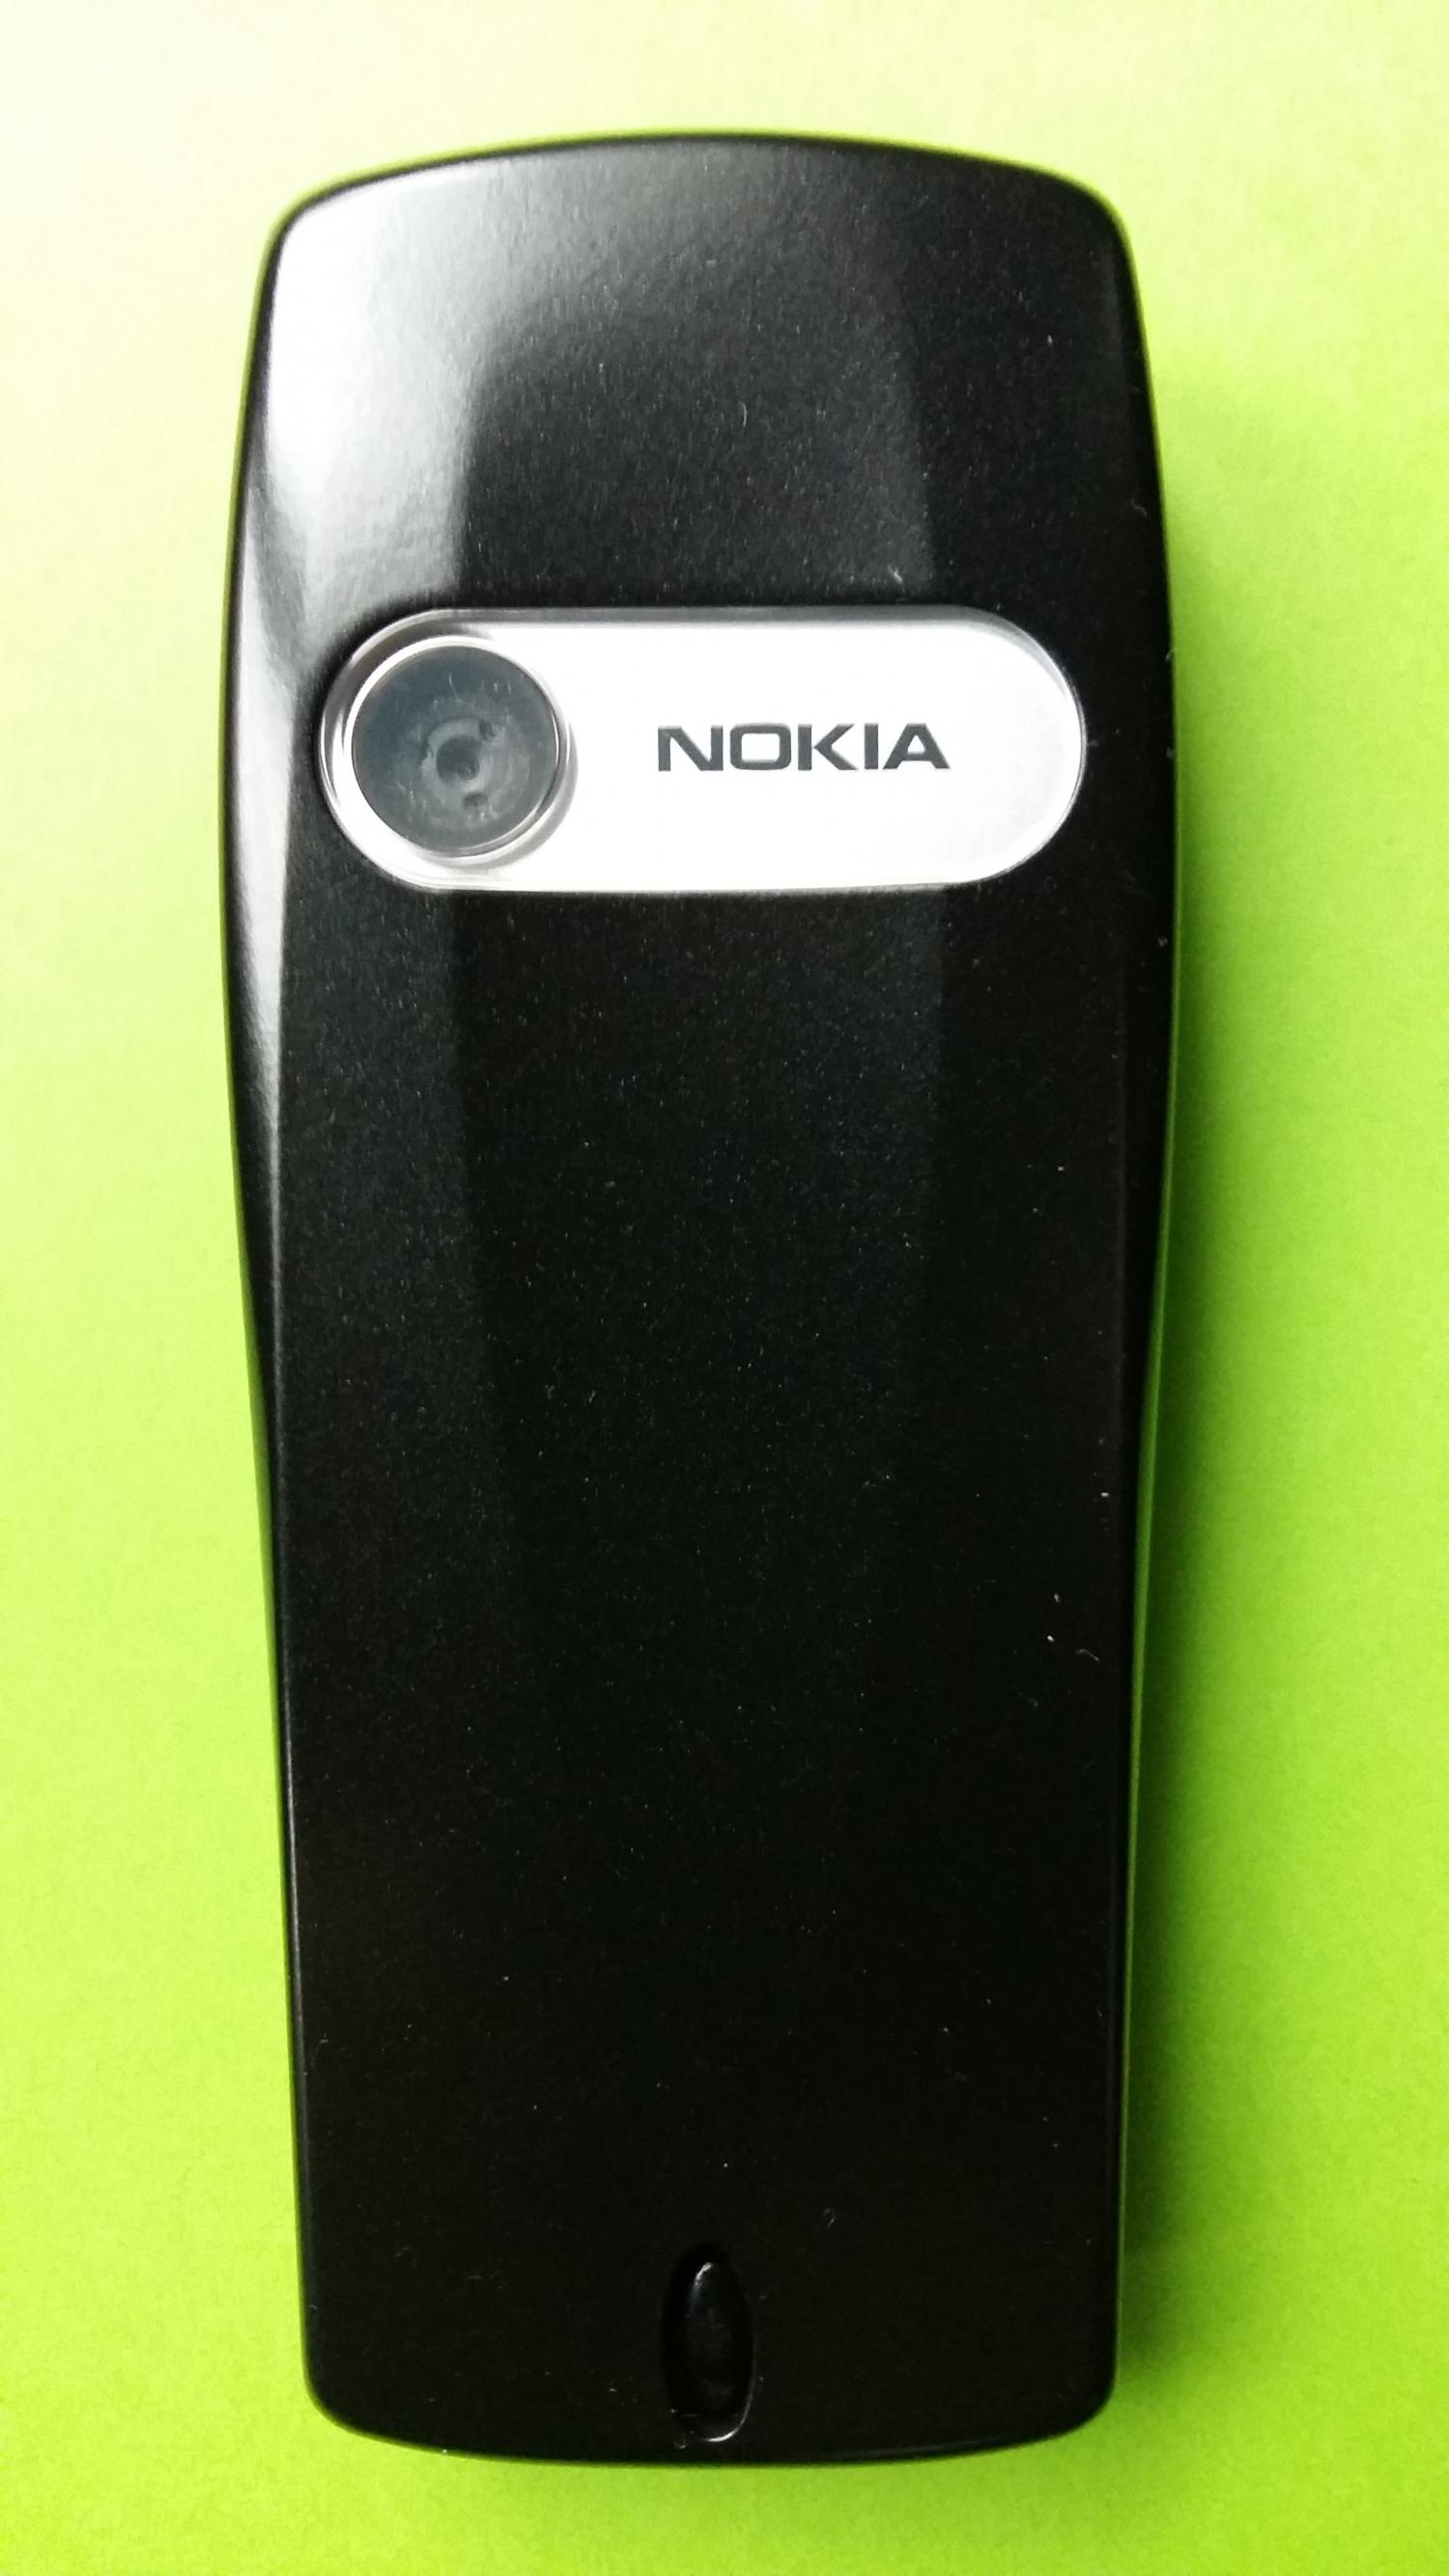 image-7336834-Nokia 6610i (6)2.jpg